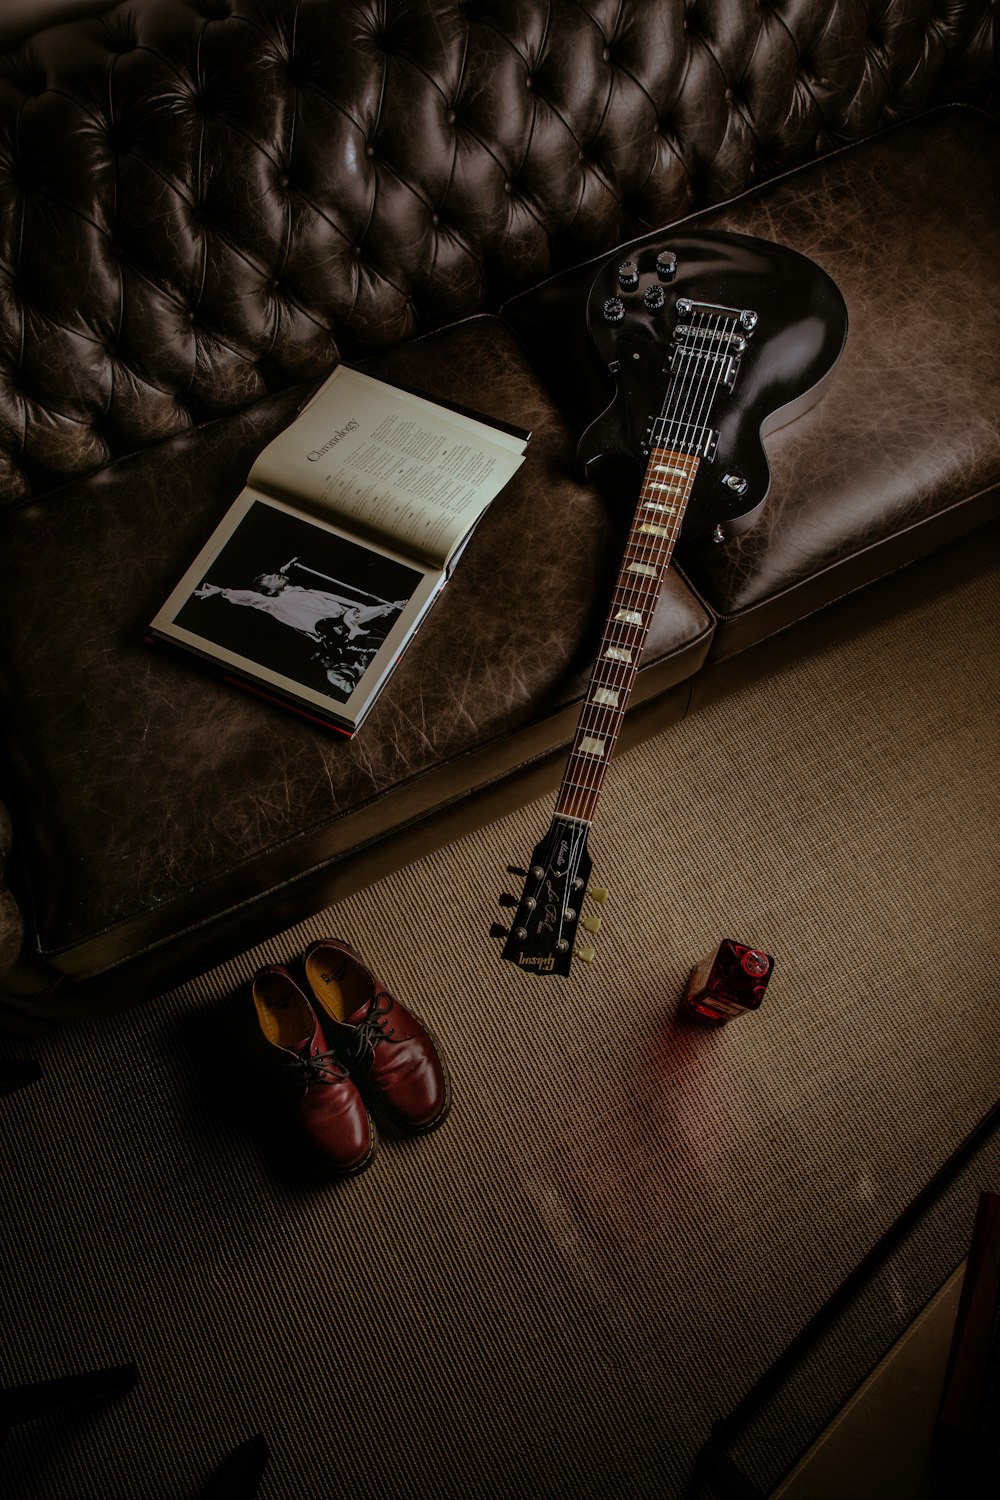 Guitare électrique Stratocaster noir et blanc à côté du livre noir et blanc  photo – Photo Guitare Gratuite sur Unsplash